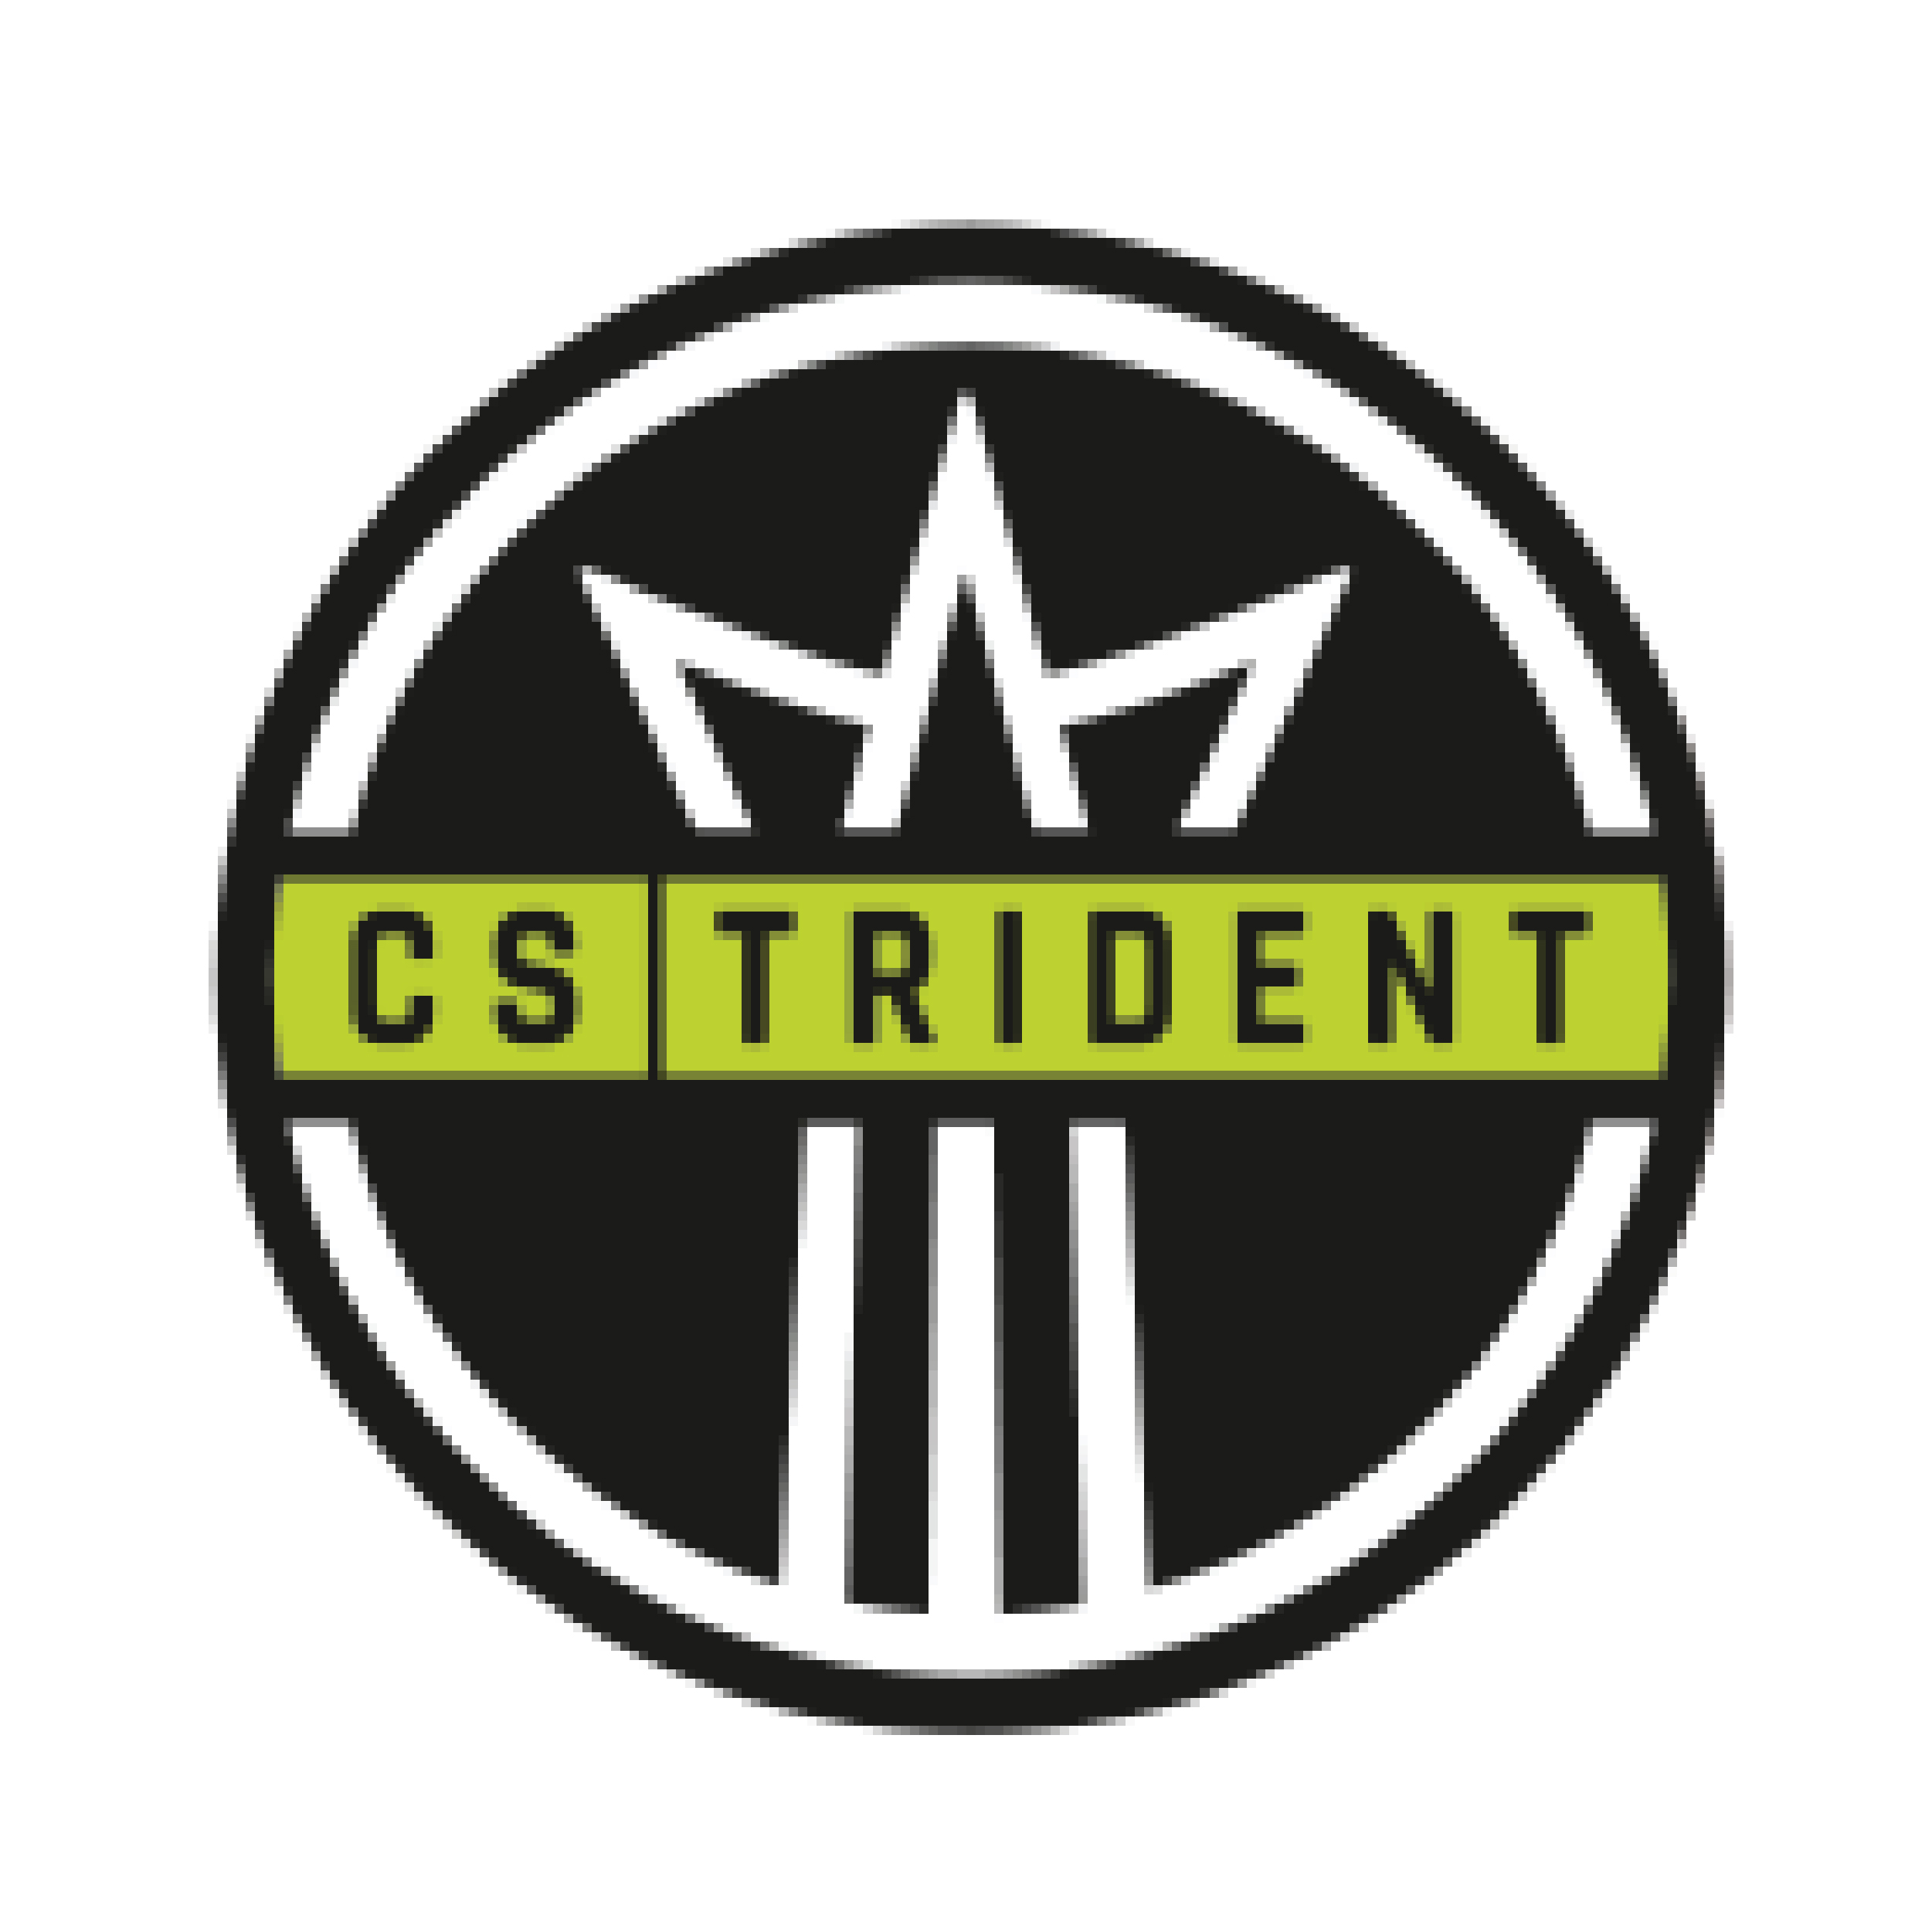 CS Trident